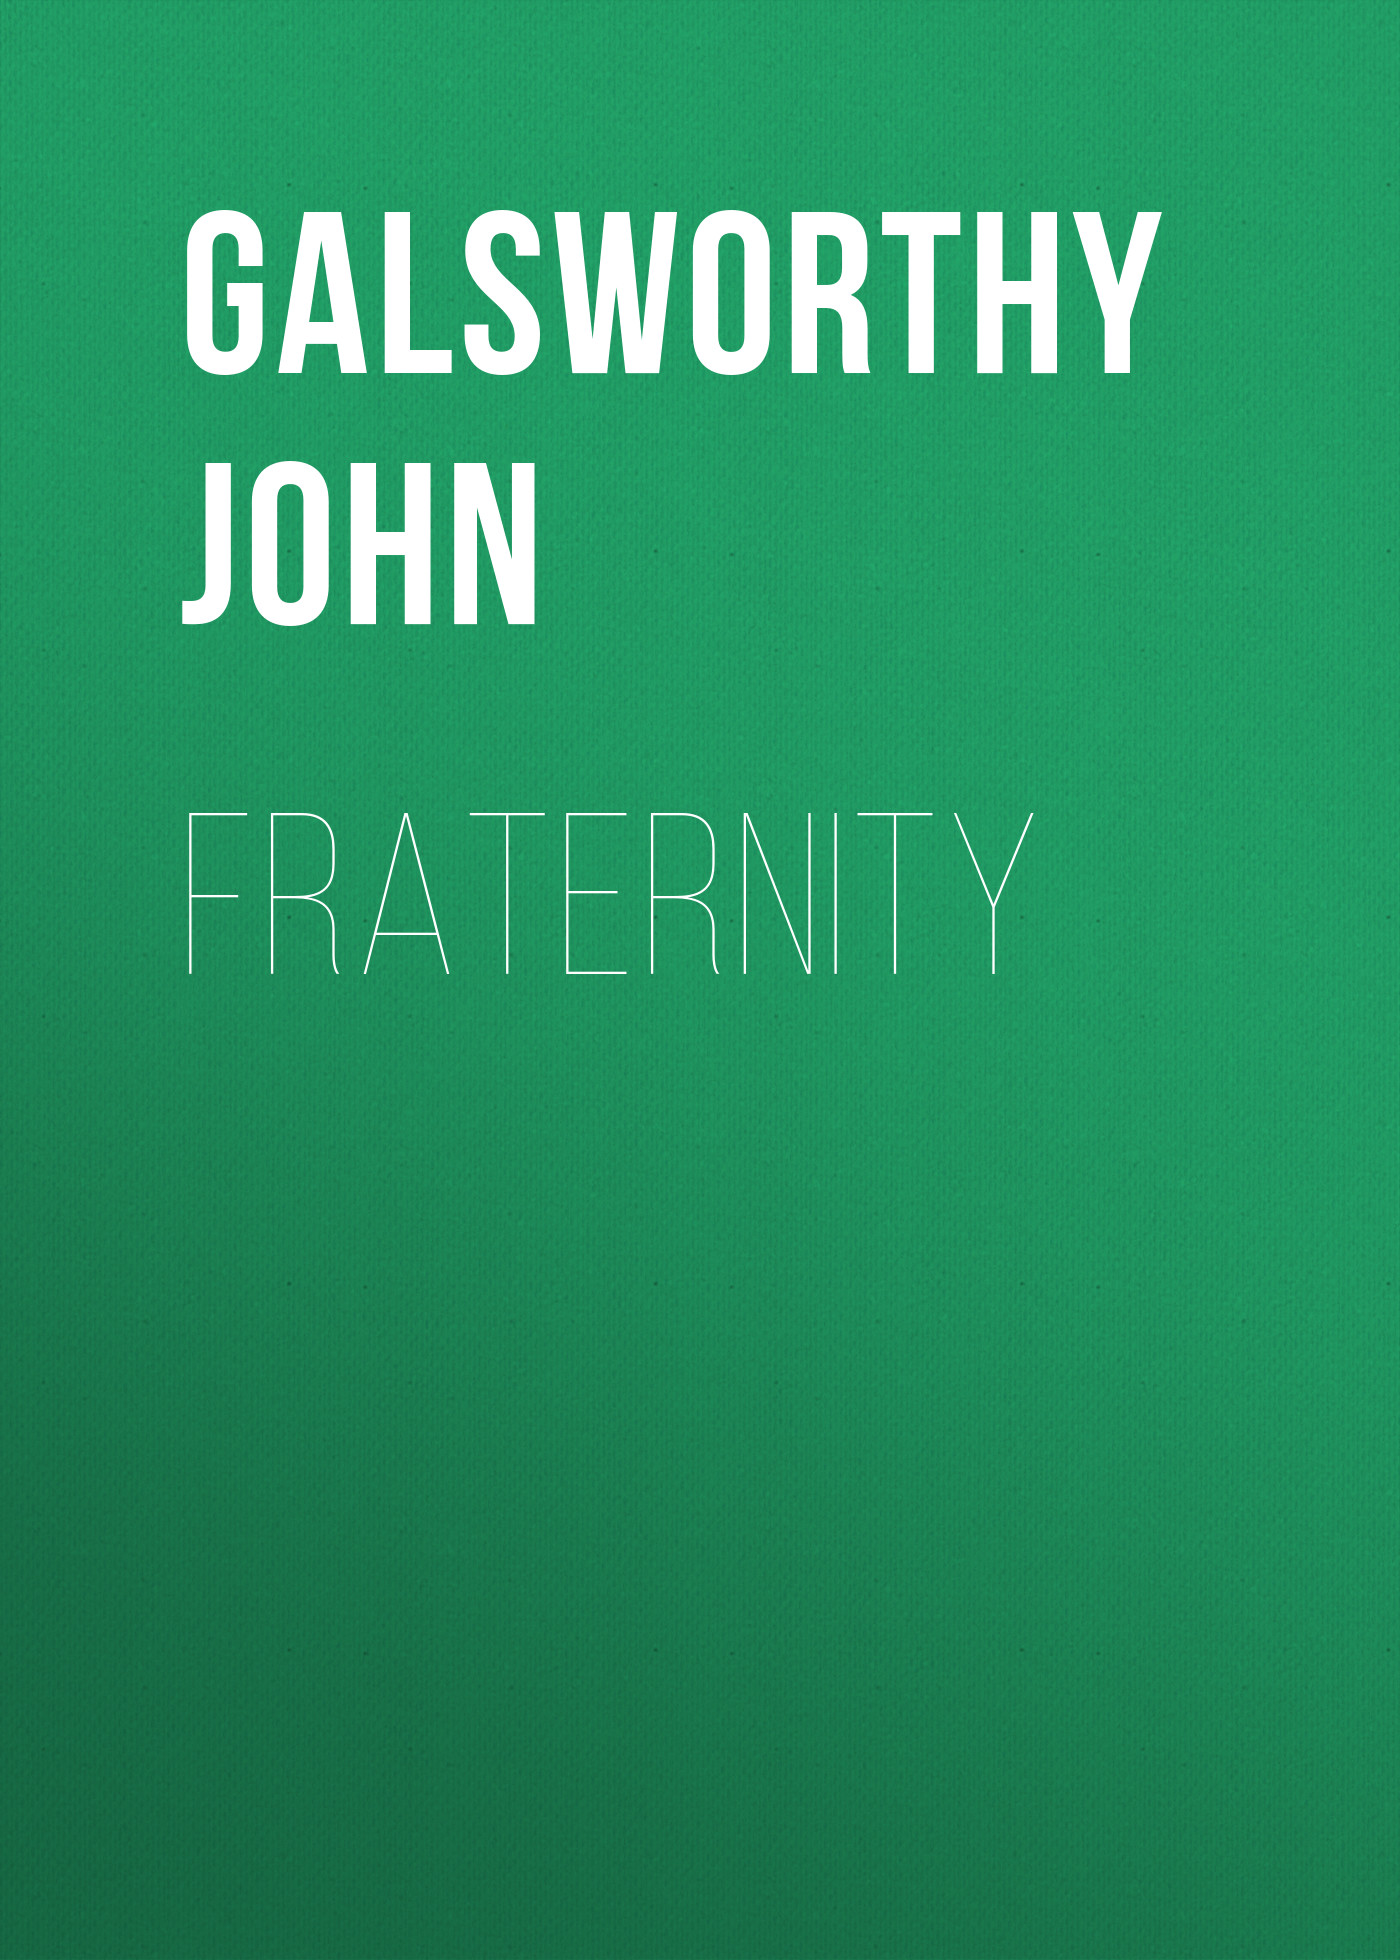 Книга Fraternity из серии , созданная John Galsworthy, может относится к жанру Зарубежная старинная литература, Зарубежная классика. Стоимость электронной книги Fraternity с идентификатором 25203039 составляет 0 руб.